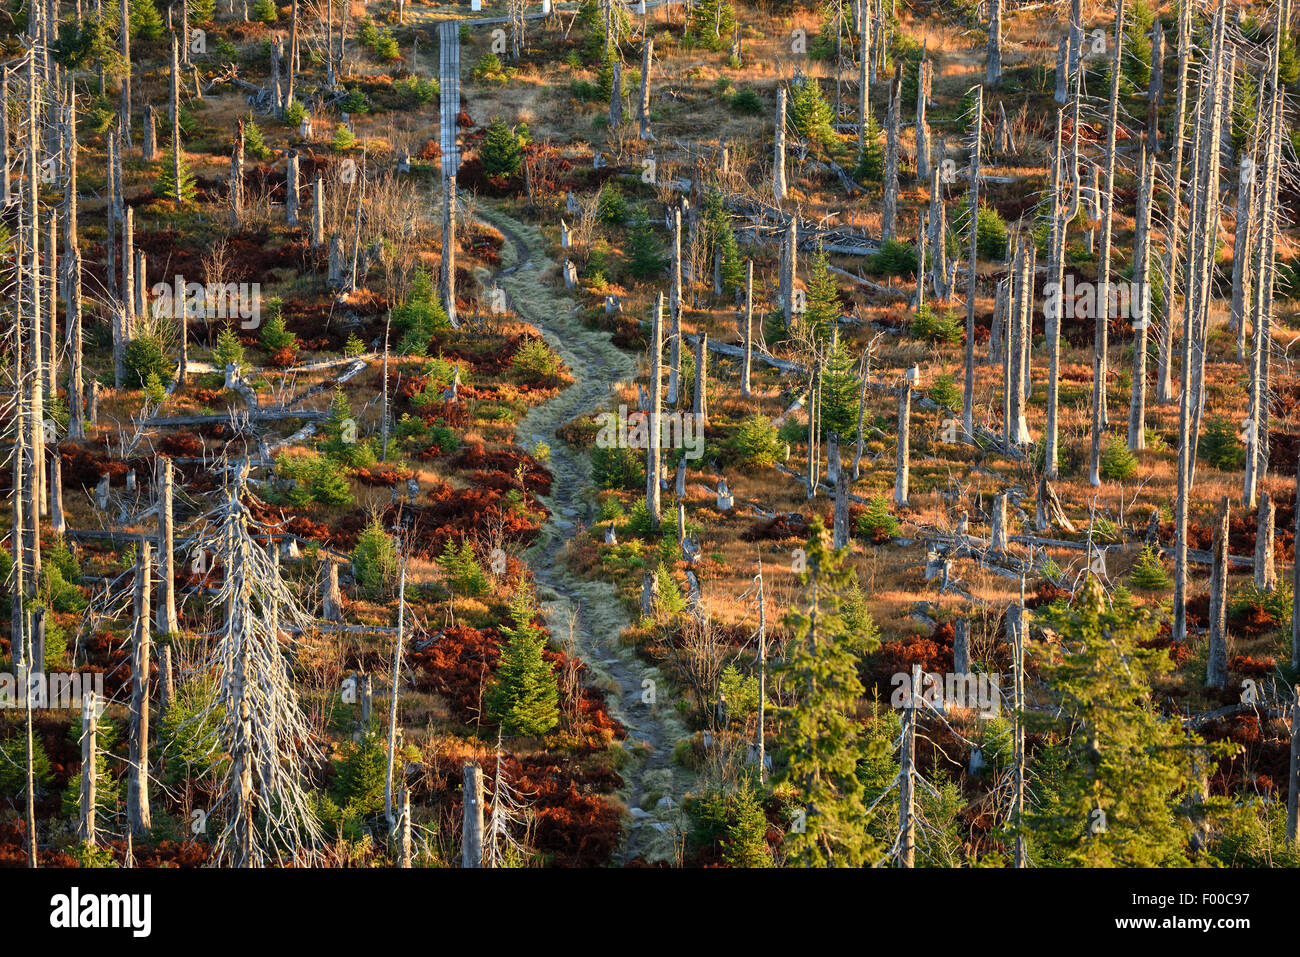 Gemeine Fichte (Picea Abies), Landschaft mit einem Toten Norwegen Fichten-Wald getötet durch Borkenkäfer (Scolytidae), Deutschland, Bayern, Nationalpark Bayerischer Wald Stockfoto